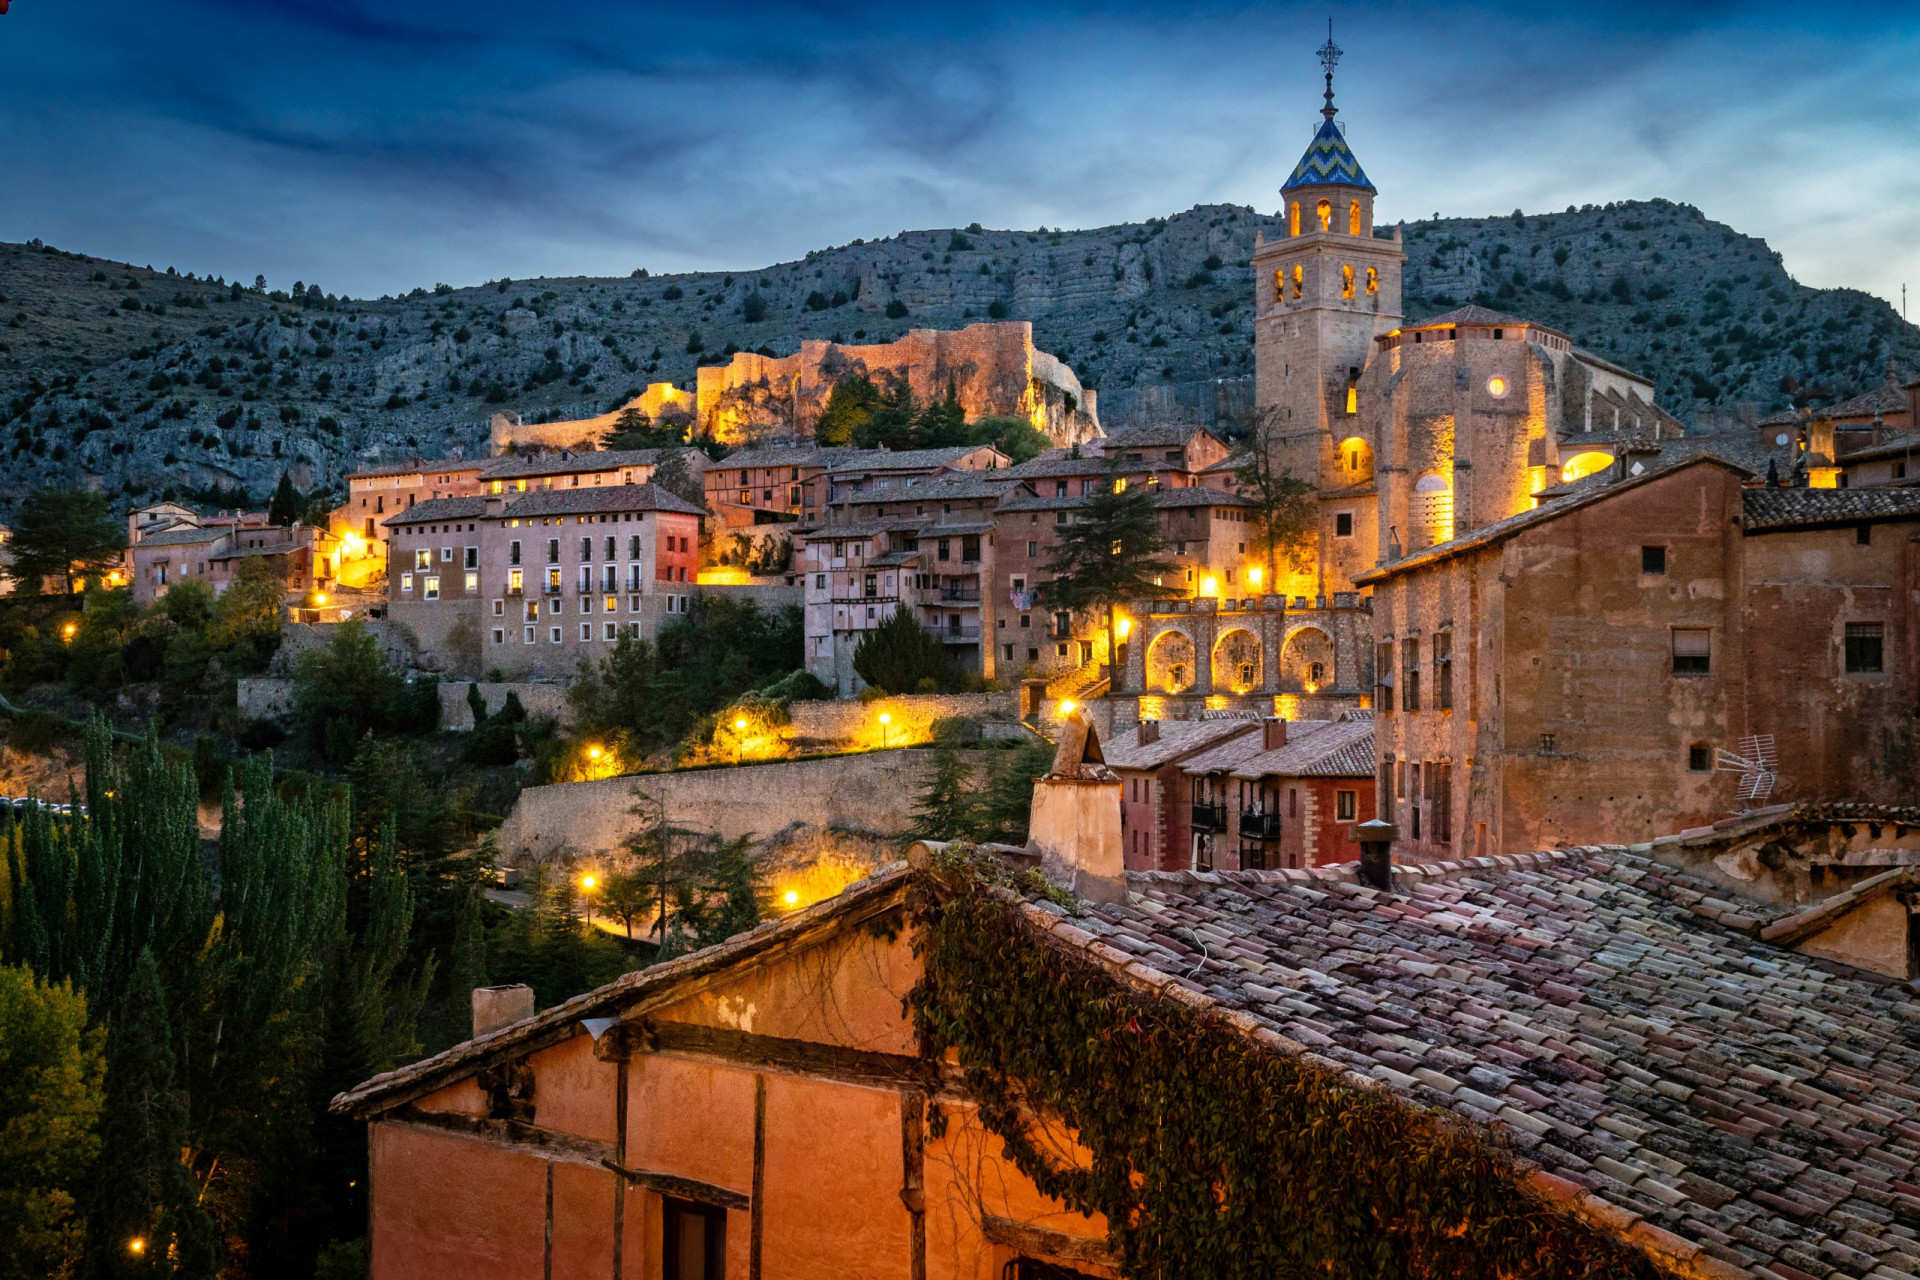 <p>Les maisons médiévales de couleur pêche d'Albarracín ne ressemblent à aucun autre endroit en Espagne. Capitale de la comarque montagneuse de la Sierra de Albarracín, Albarracín est entourée de collines rocailleuses et d'un véritable sentiment d'isolement.</p><p>Tu pourrais aussi aimer:<a href="https://www.starsinsider.com/n/380544?utm_source=msn.com&utm_medium=display&utm_campaign=referral_description&utm_content=612932"> Quand les stars ferment le claper à leurs ennemis </a></p>